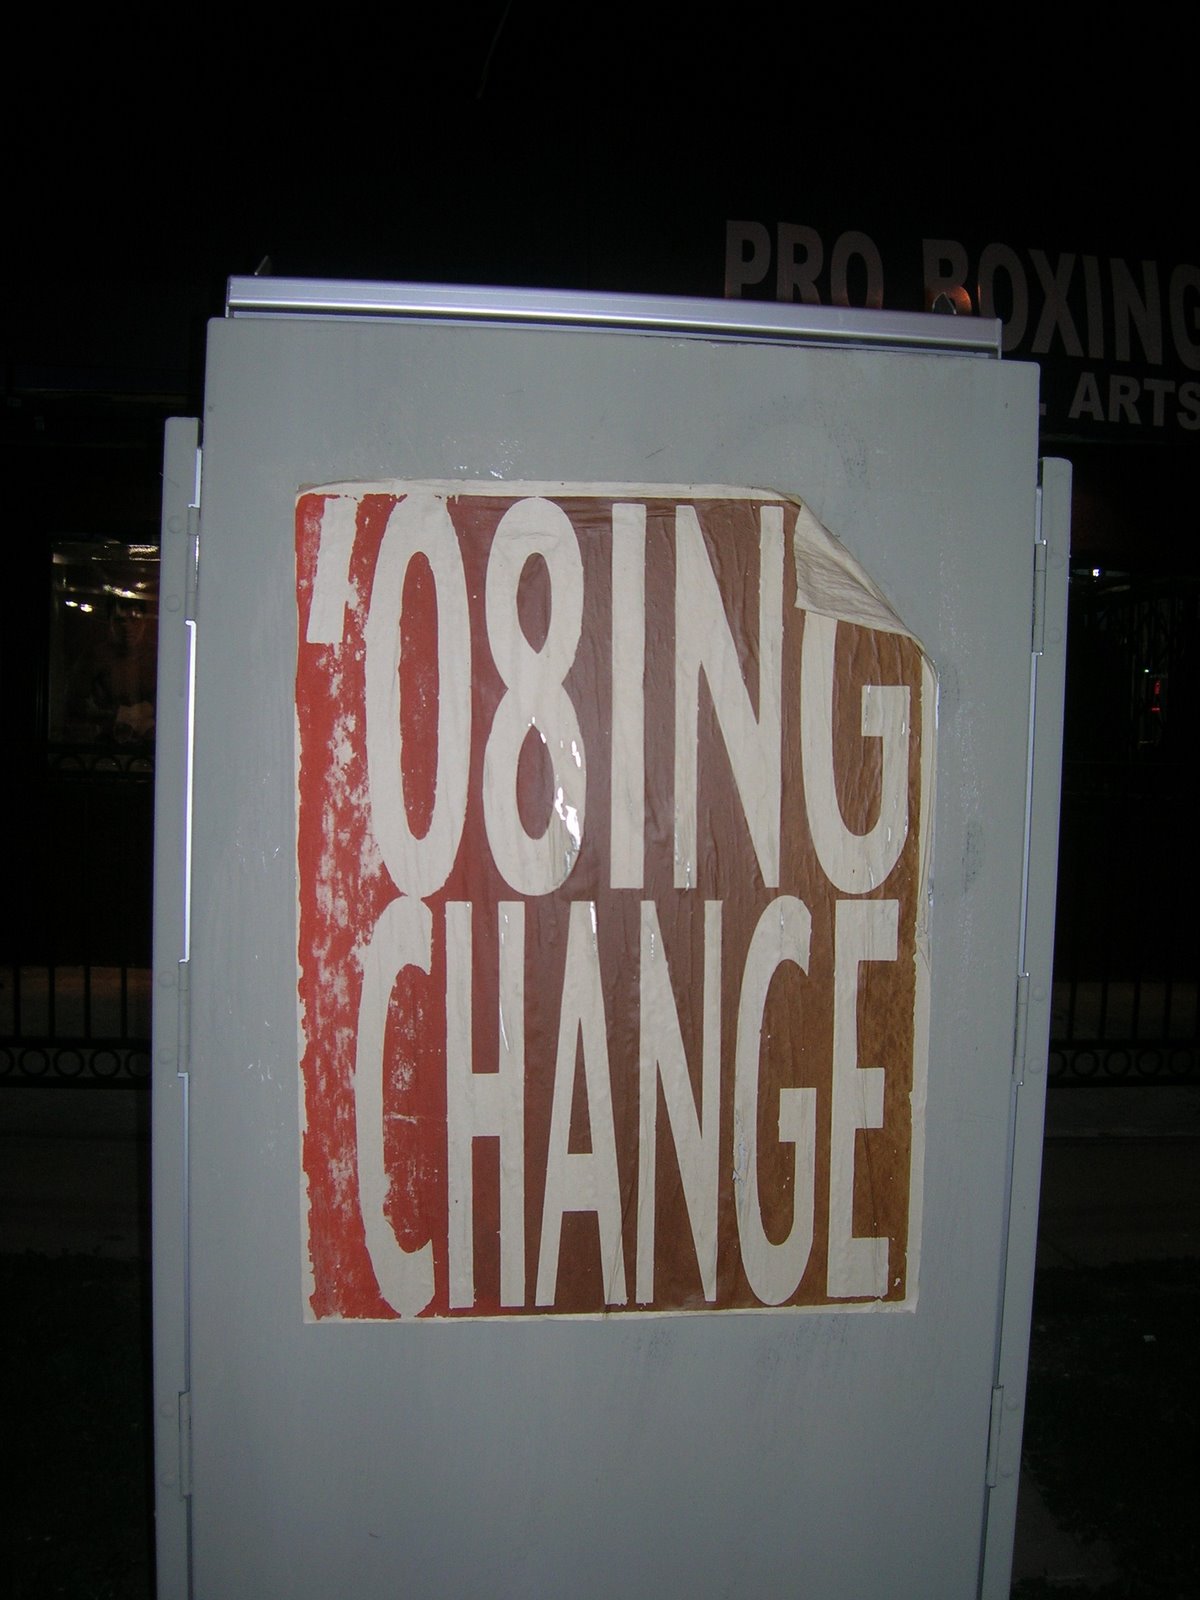 [08ing+Change.jpg]